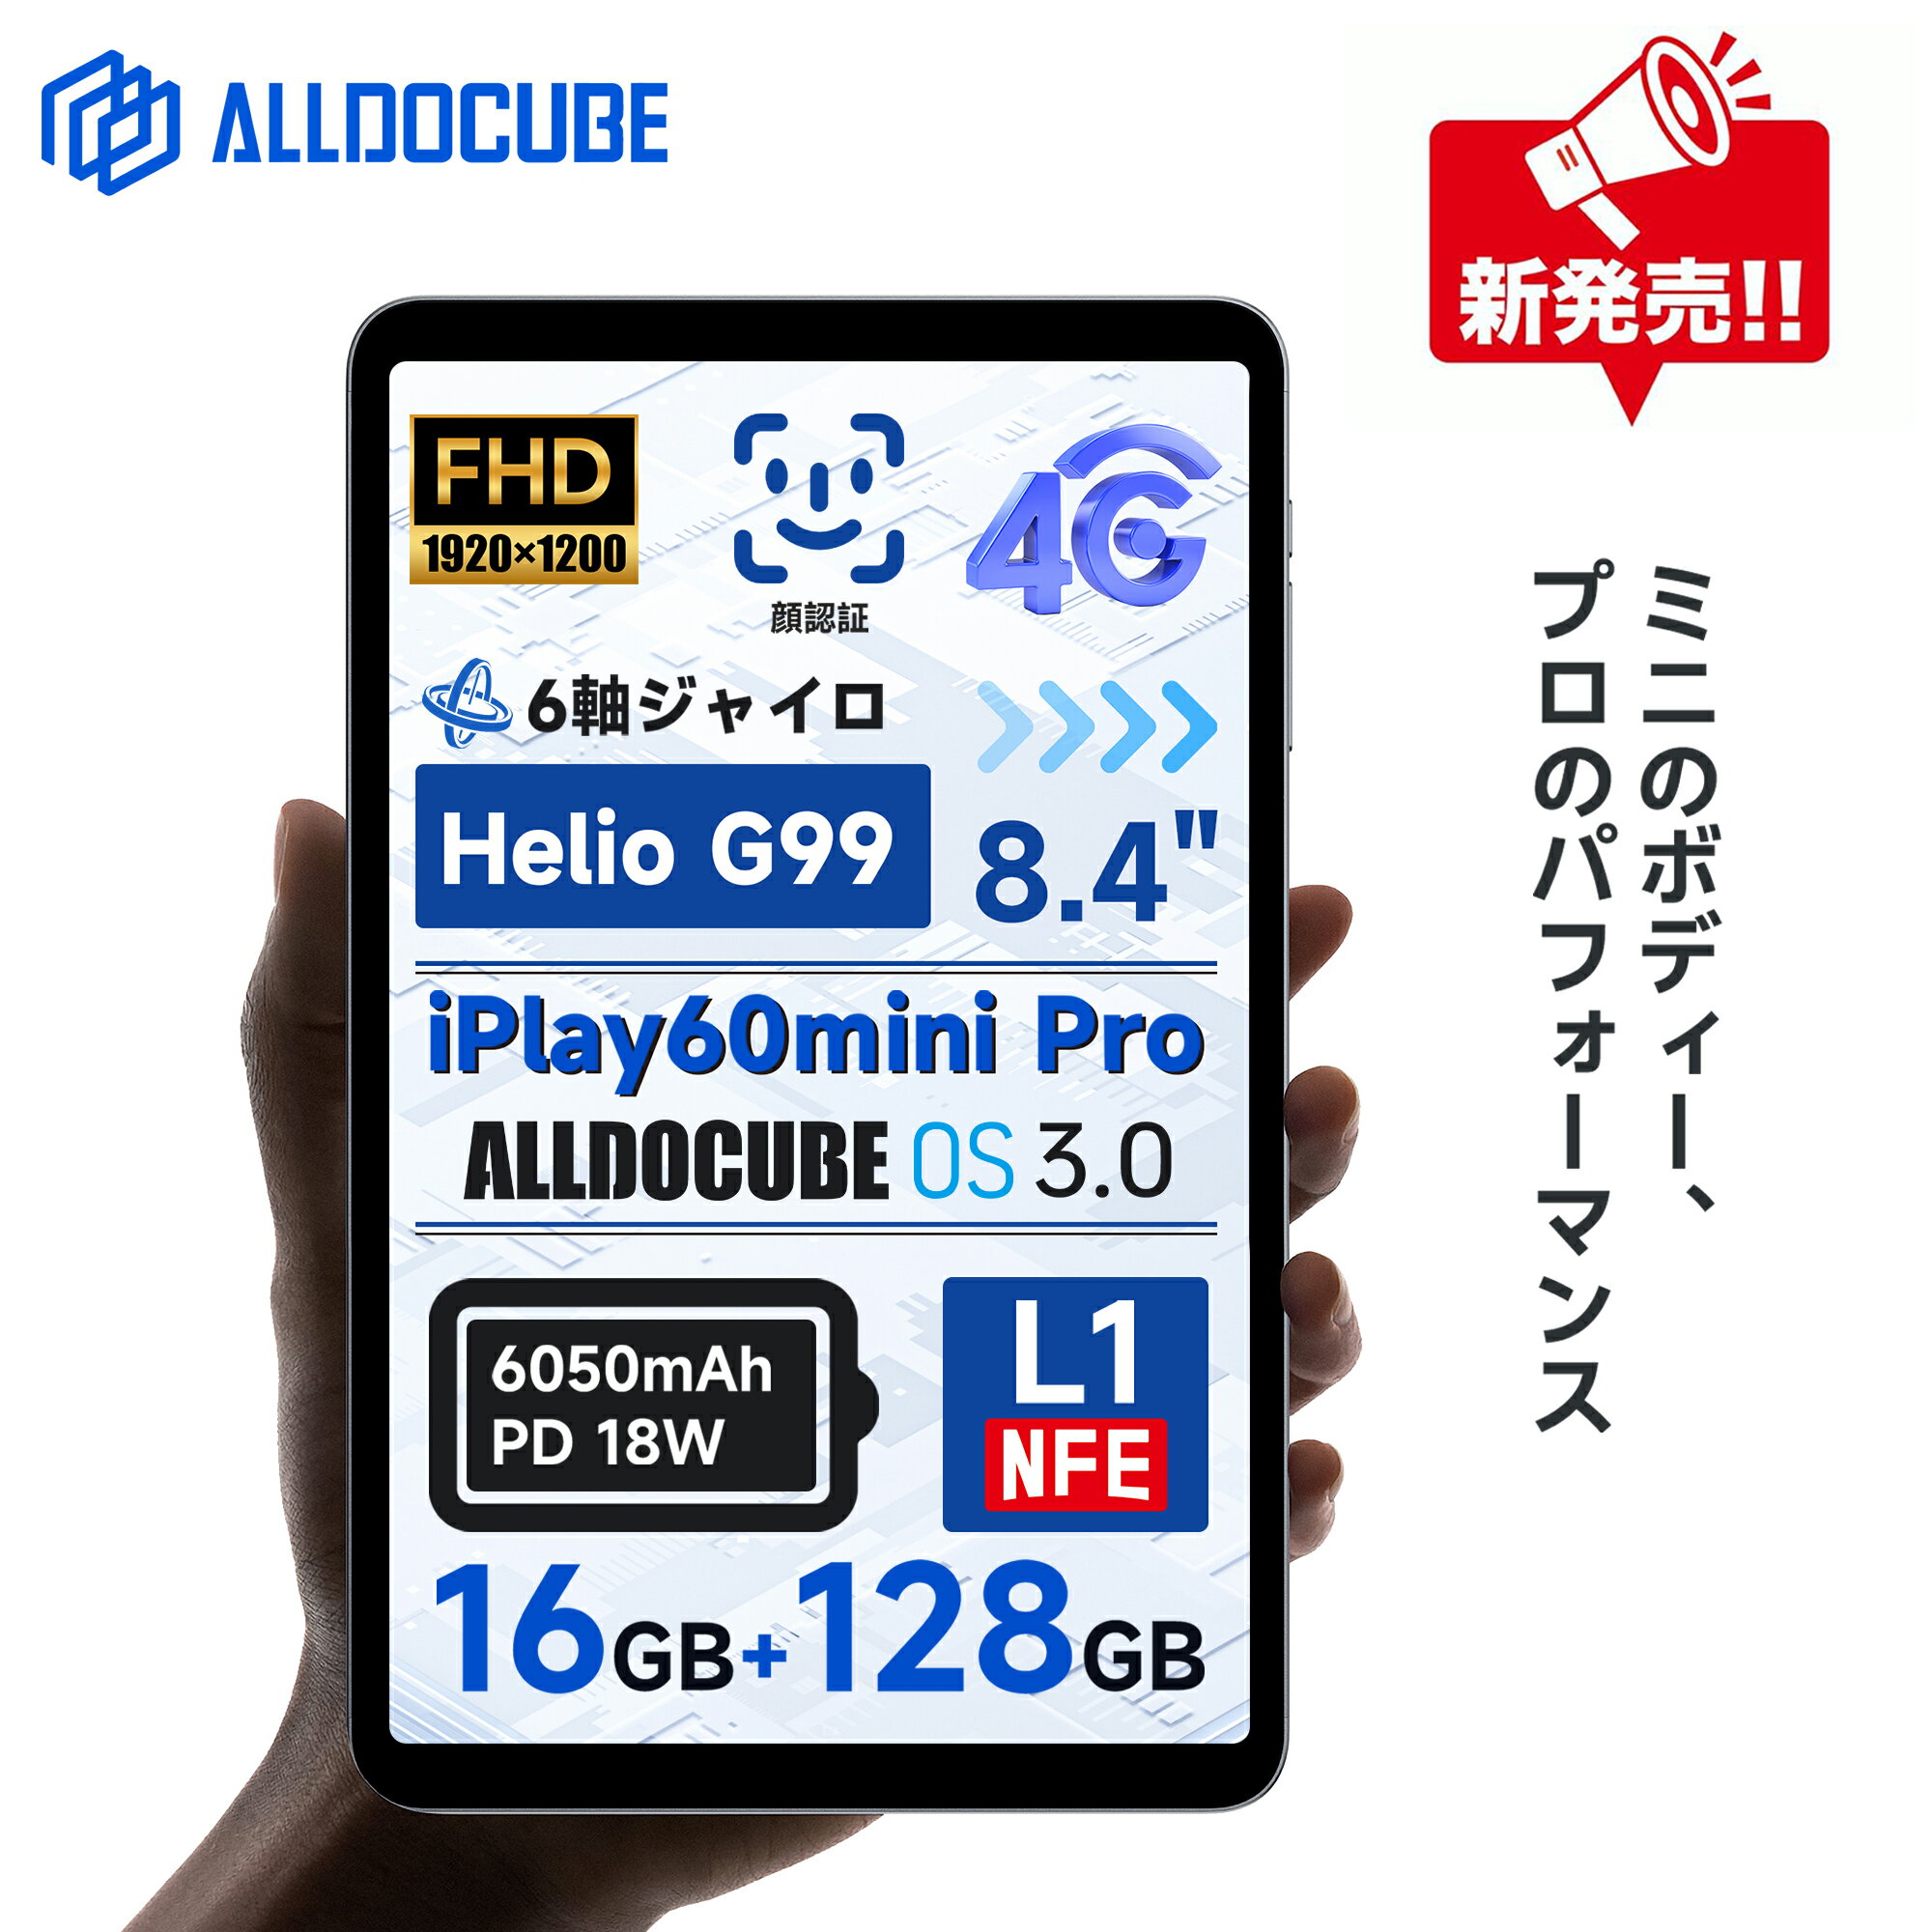 タブレット 【楽天ランキング1位受賞】ALLDOCUBE iPlay60 mini Pro タブレット 8インチタブレット ALLDOCUBE OS3.0 Android14タブレット 8.4インチ タブレット g99 16GB+128GB Androidタブレット Widevine L1 1920×1200解像度 ジャイロスコープ 明るさ自動調整